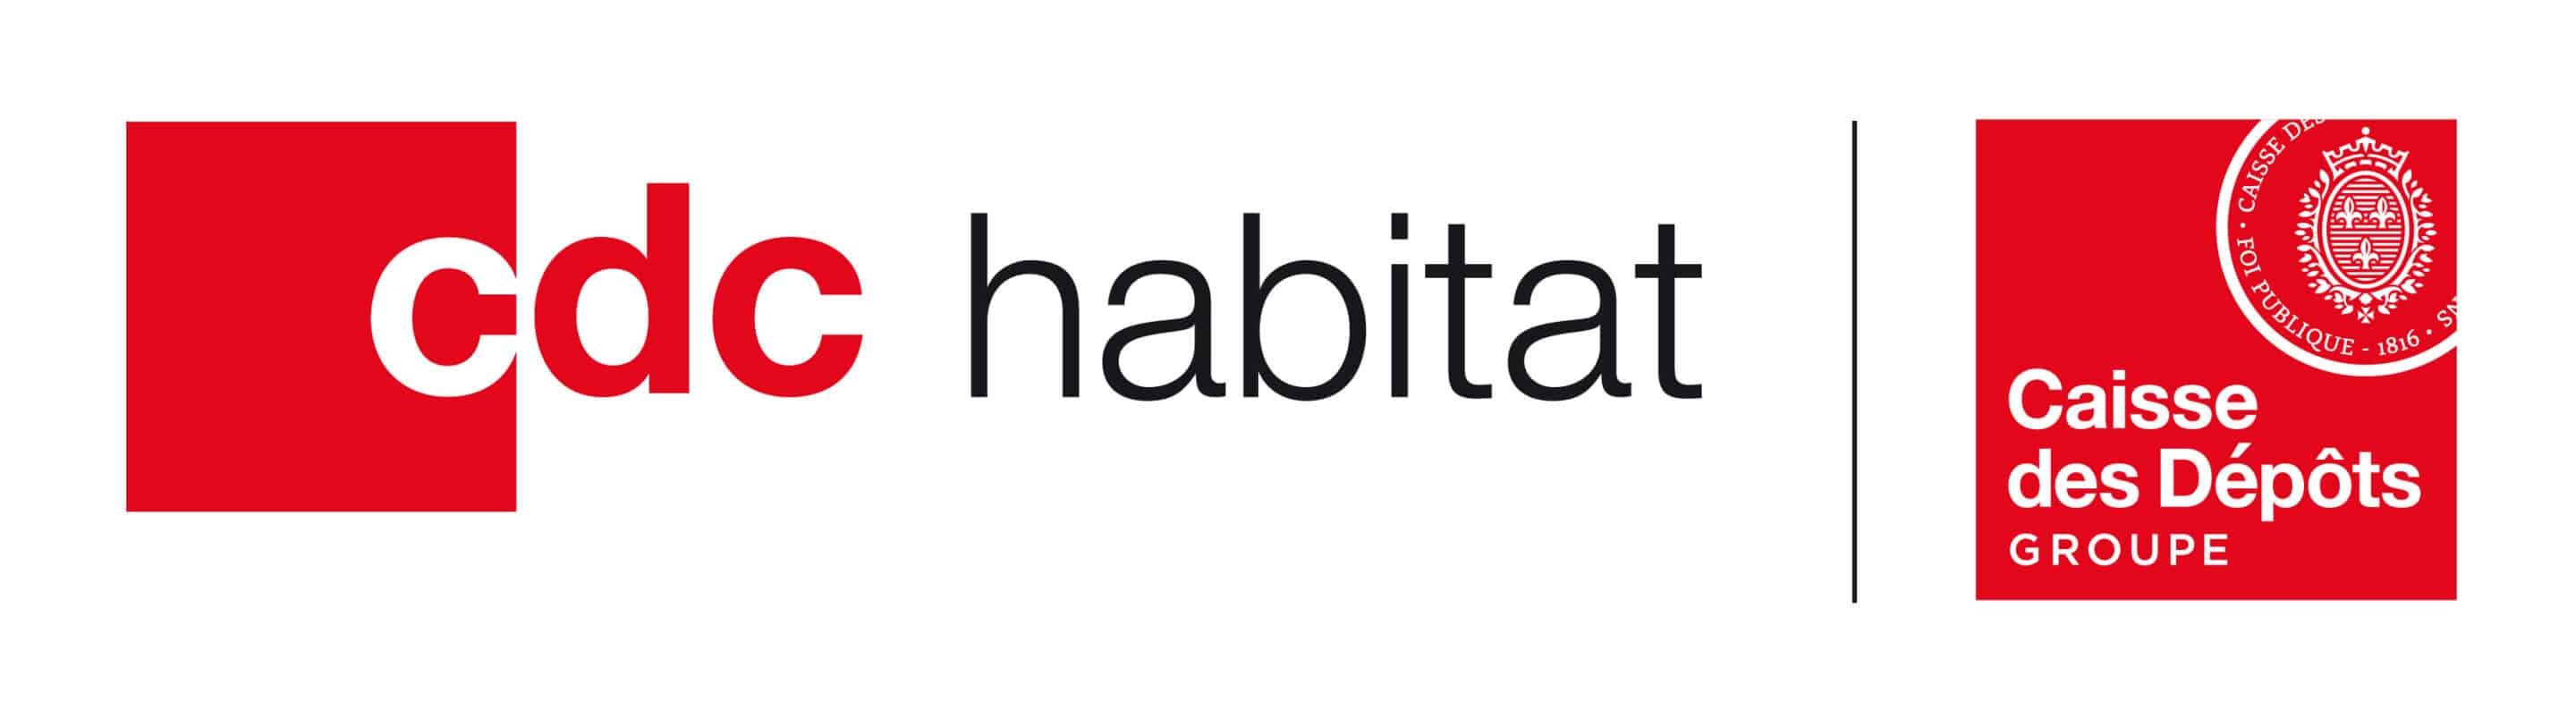 cdc habitat logo